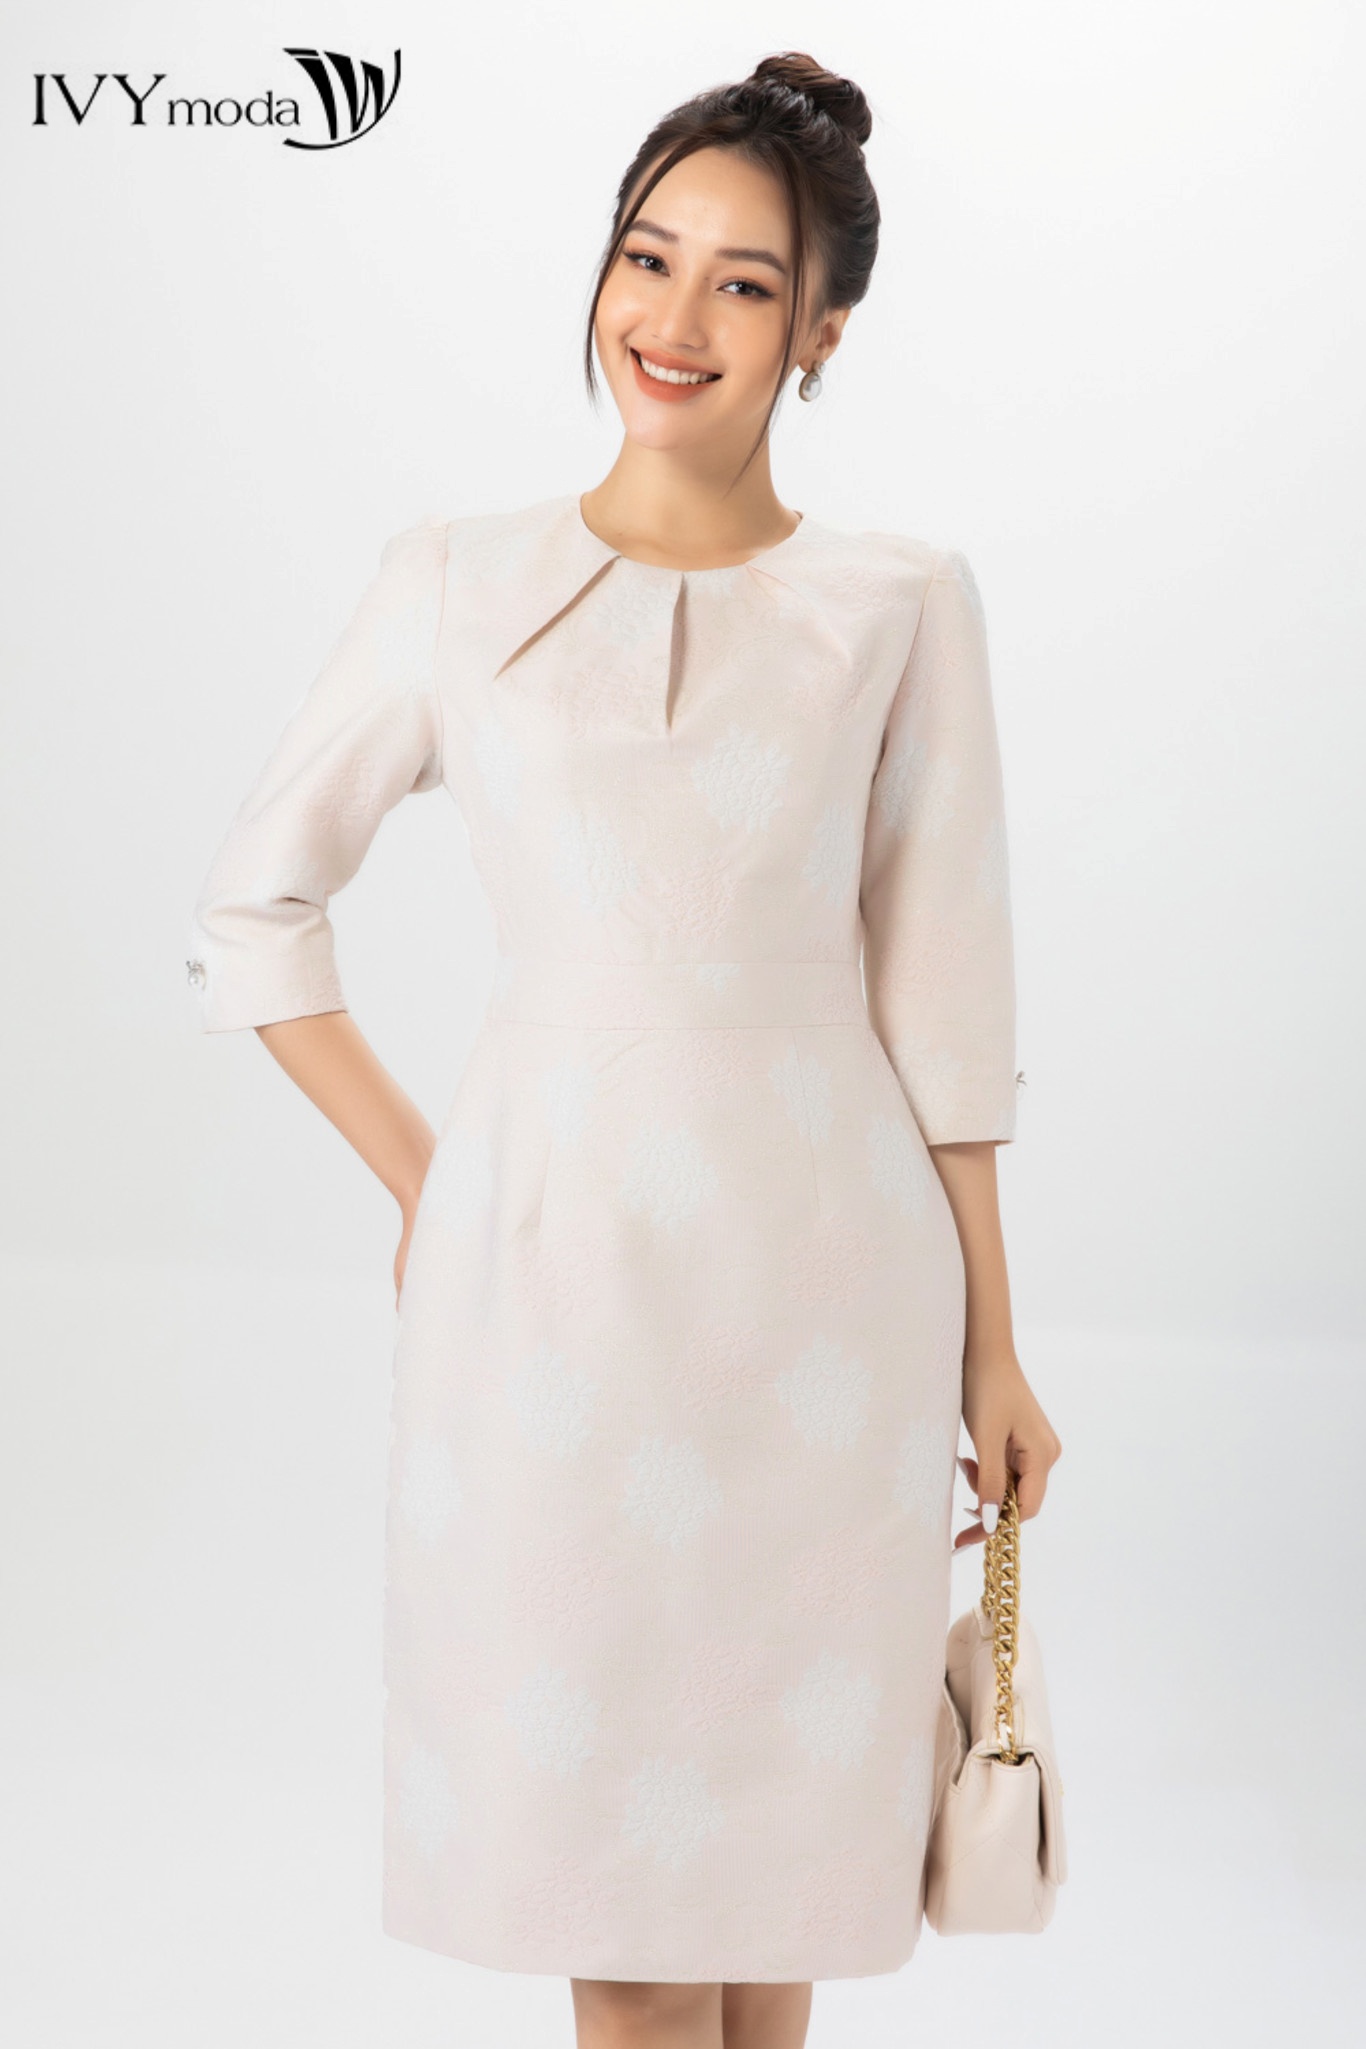 Đầm xòe nữ tay phối lưới IVY moda MS 48M7048 | Shopee Việt Nam